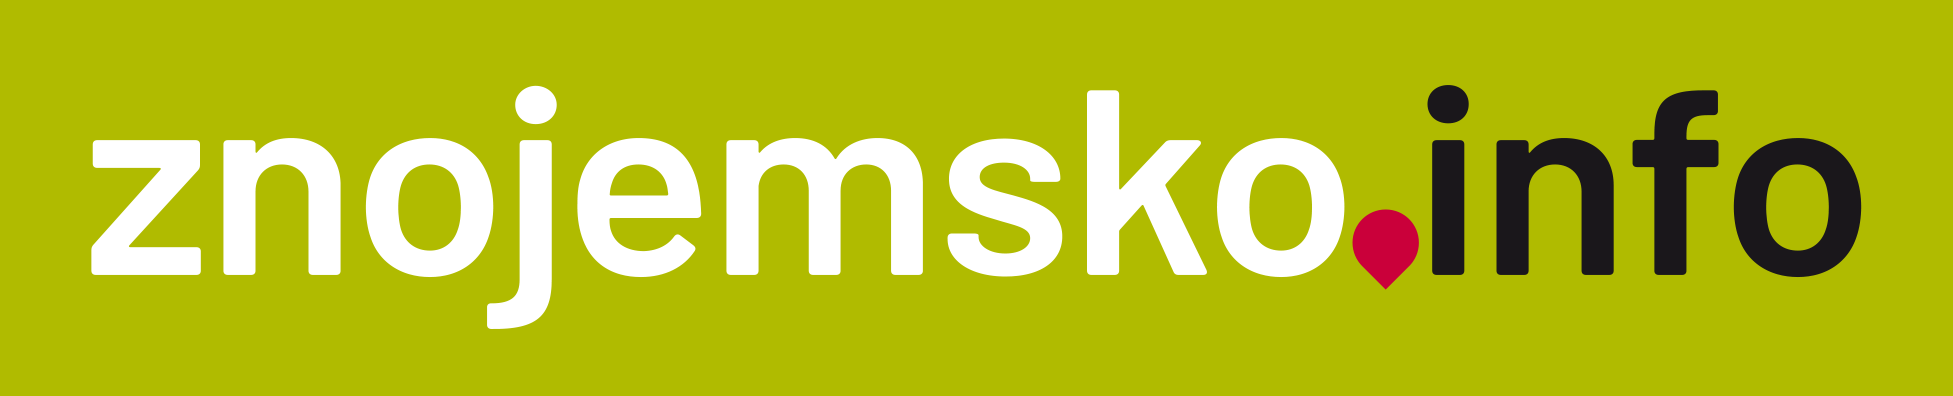 Znojemsko.info - logo